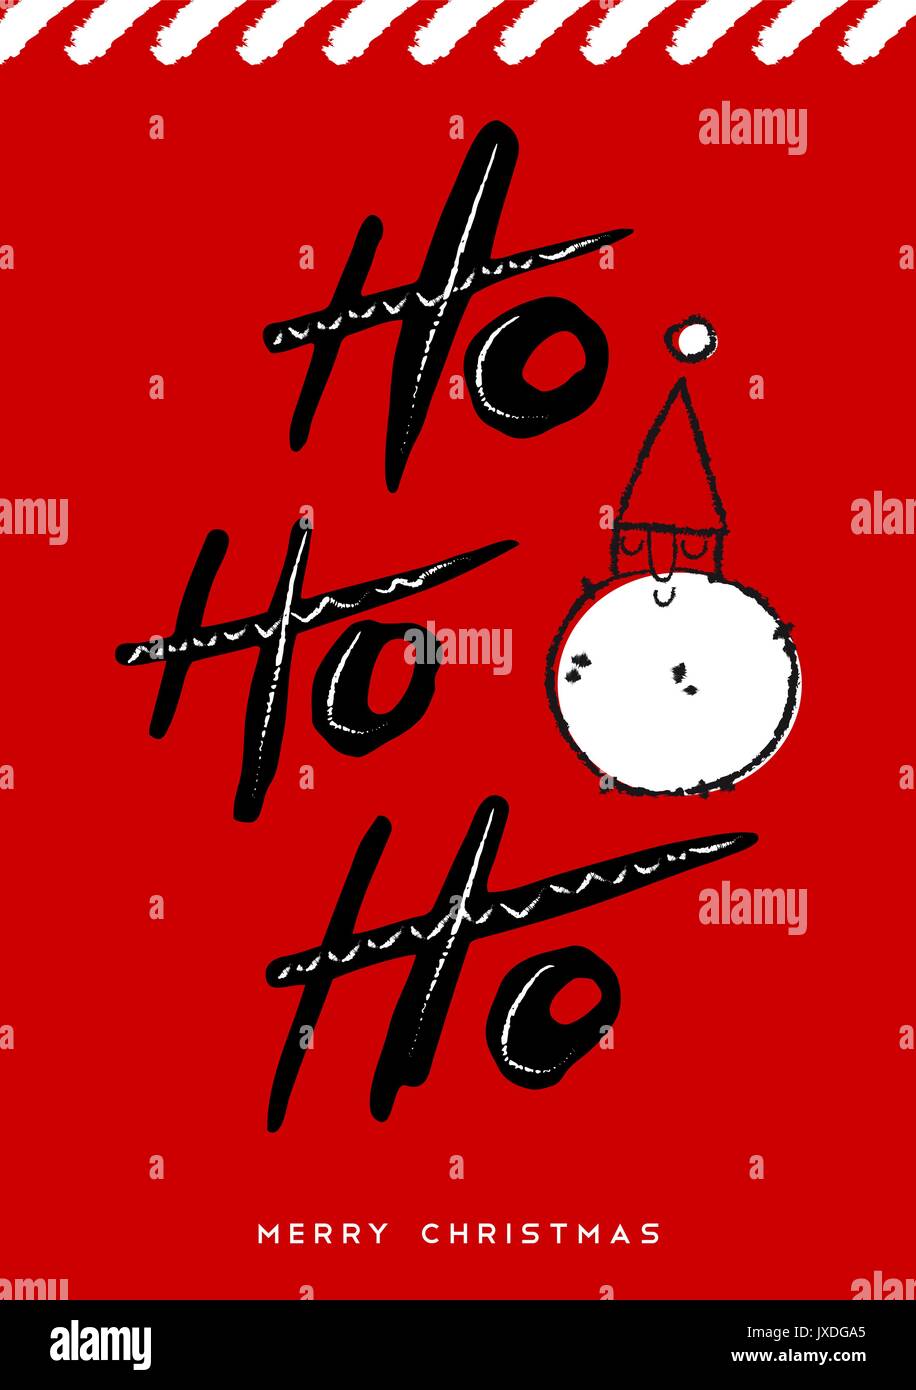 Süße Weihnachten Grußkarte Design für die Ferienzeit mit Hand gezeichnet Santa Claus und Typografie. Kreative vintage Kalligraphie zitat Abbildung. EP Stock Vektor